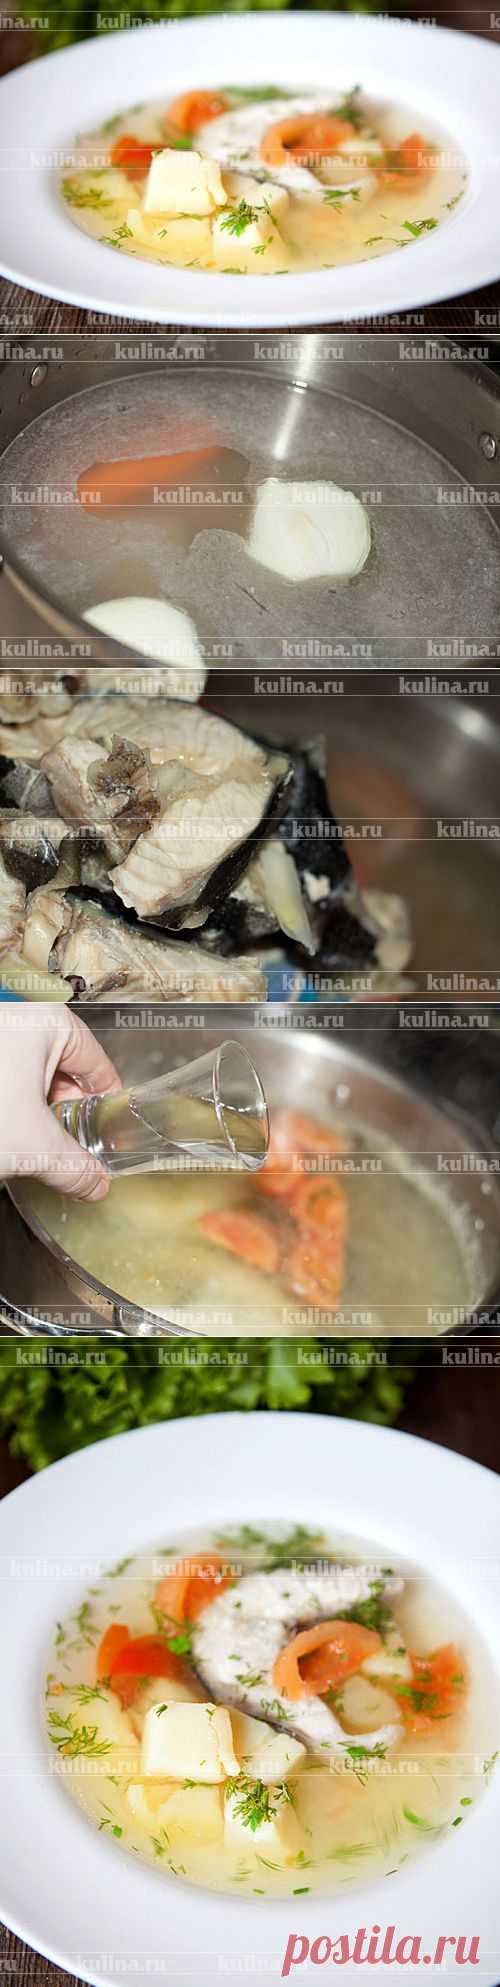 Суп из осетрины – рецепт приготовления с фото от Kulina.Ru